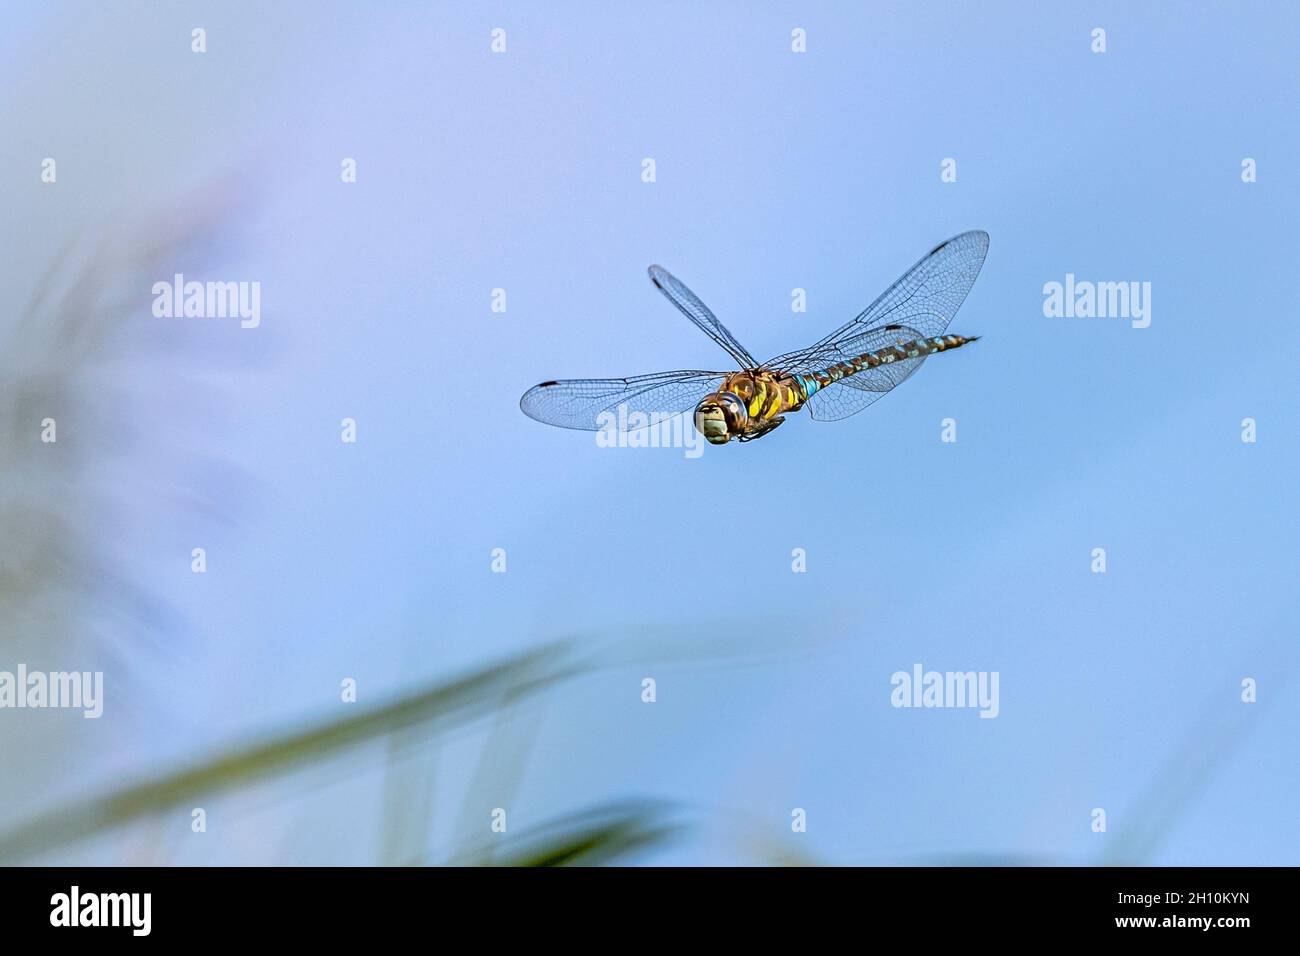 grande libellule colorée volant dans le ciel bleu - image haute vitesse Banque D'Images